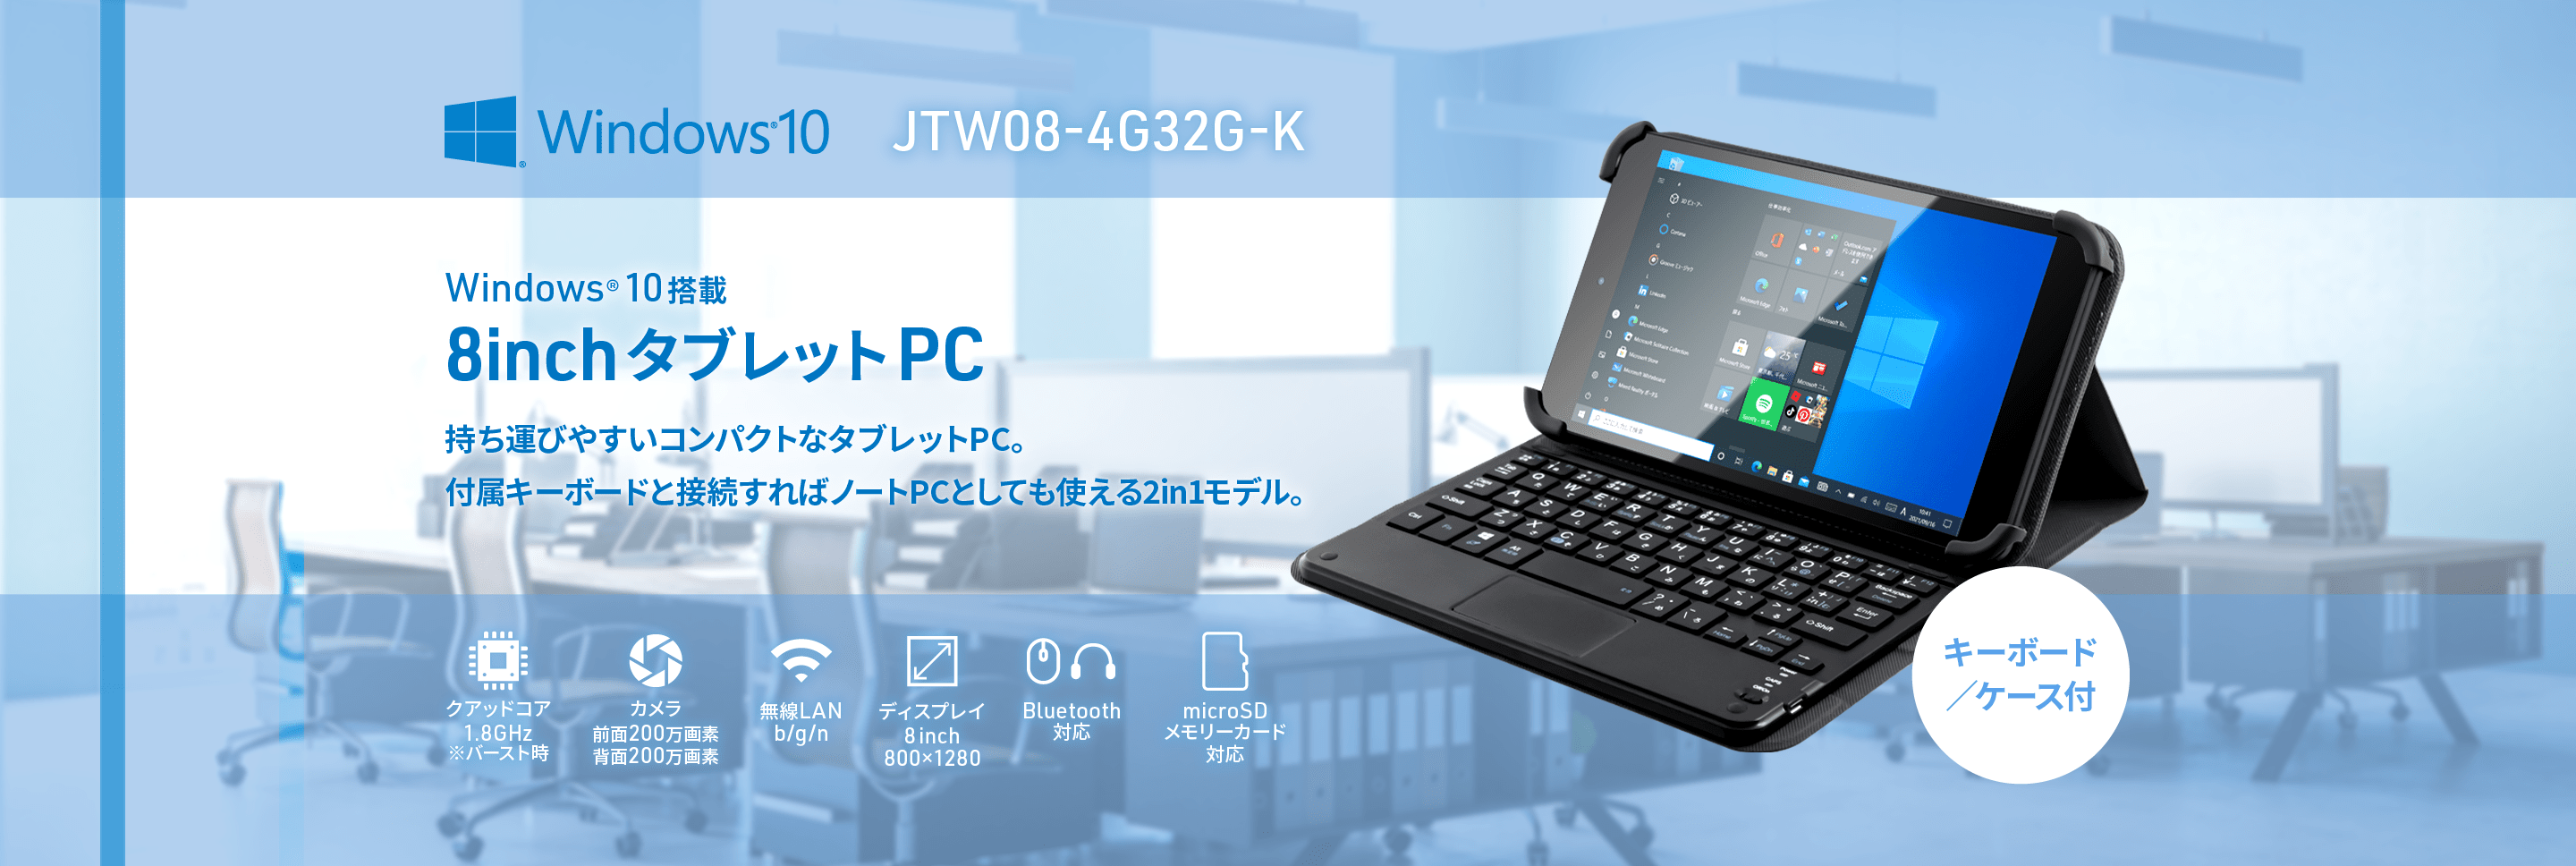 JTW08-4G32G-K